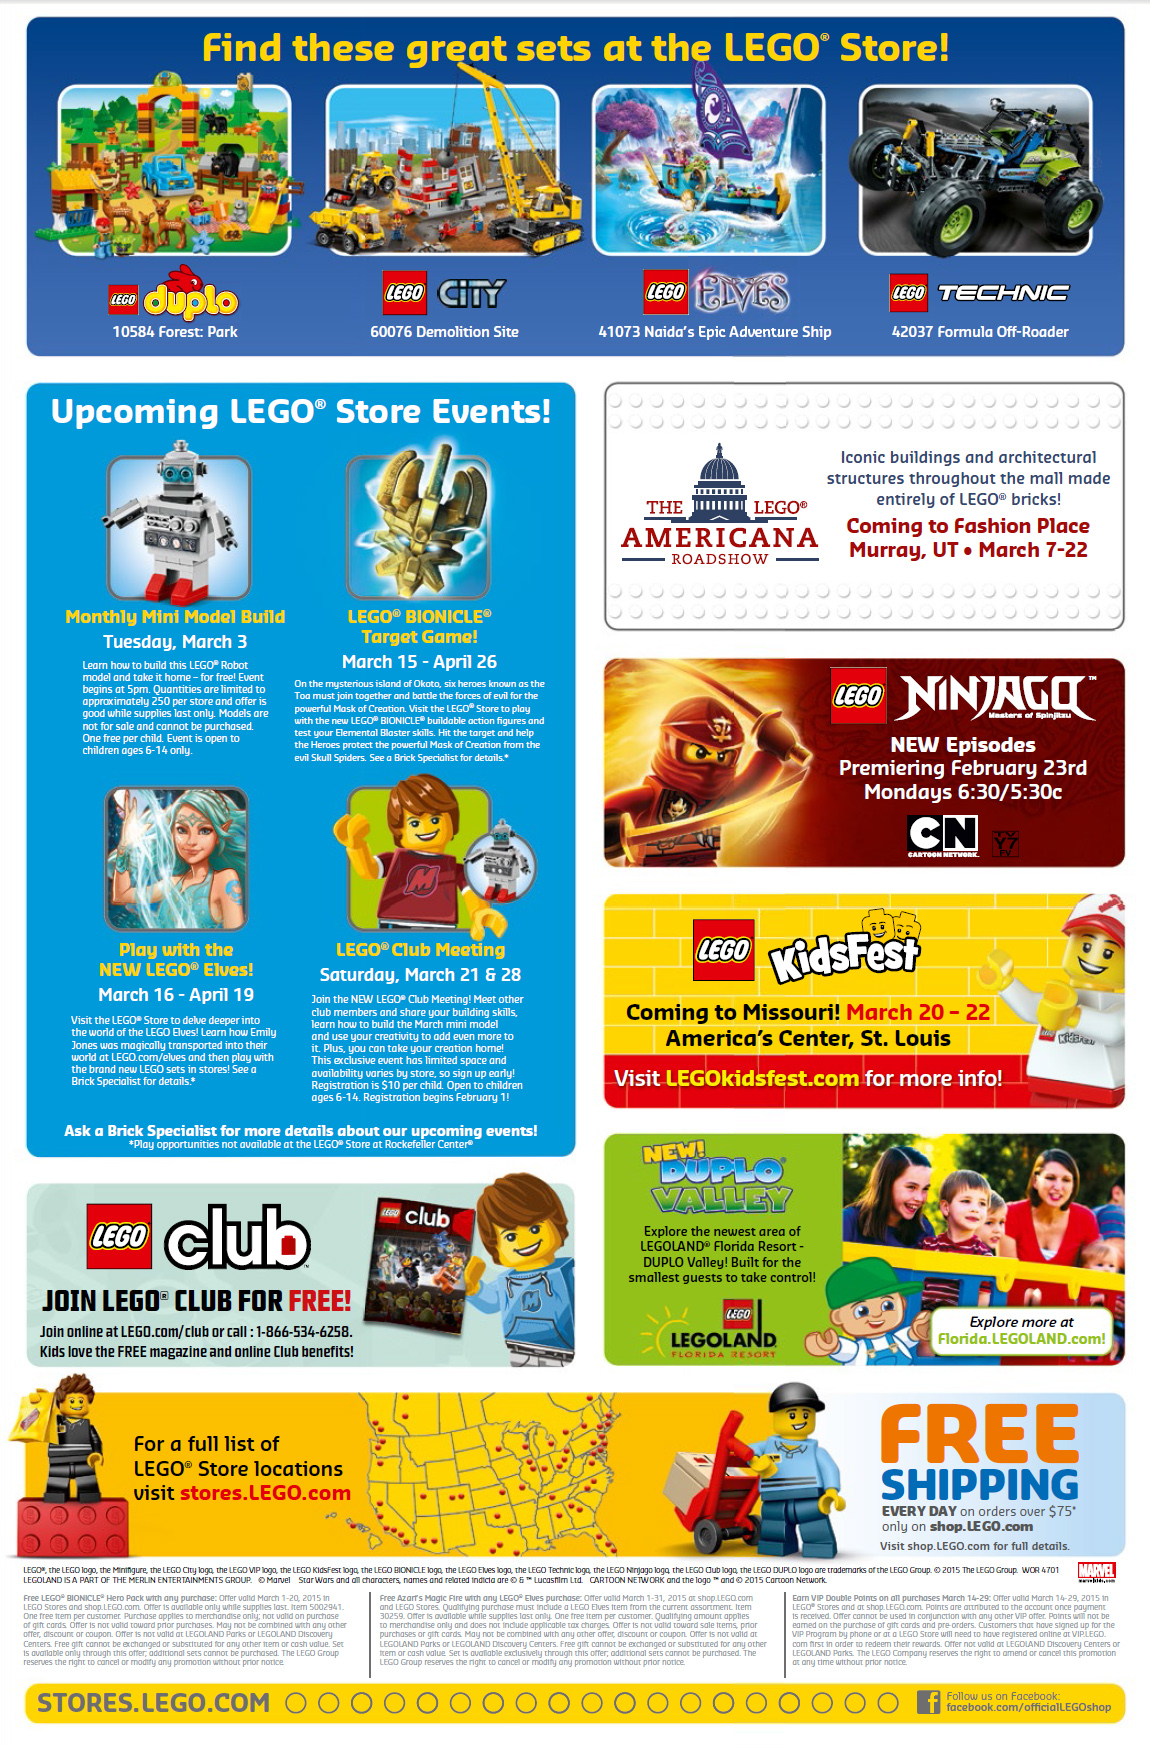 beskyldninger Sømil gentage March 2015 LEGO Stores Calendar Promos Deals & Events! - Bricks and Bloks